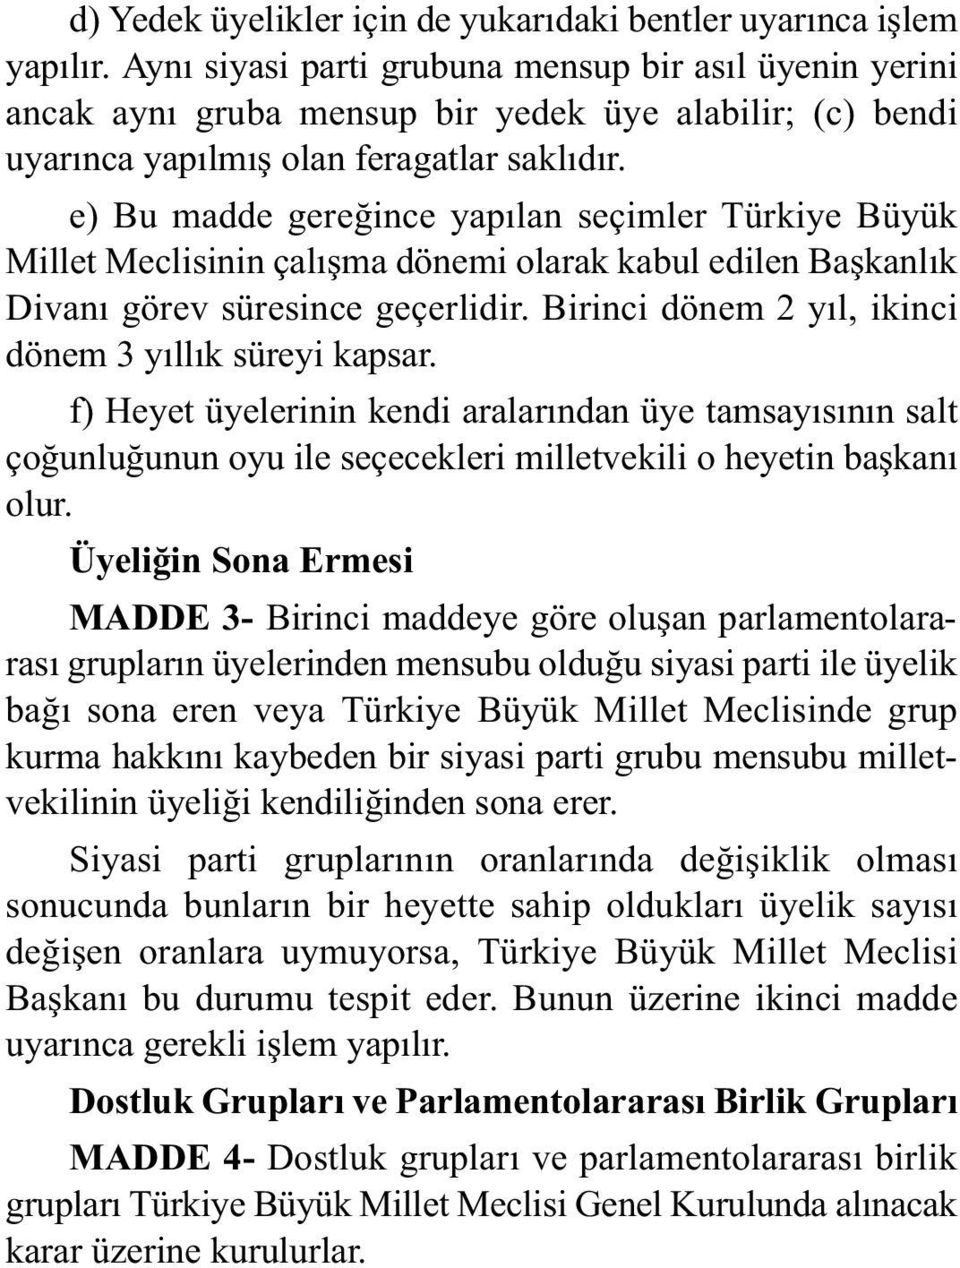 e) Bu madde gereðince yapýlan seçimler Türkiye Büyük Millet Meclisinin çalýþma dönemi olarak kabul edilen Baþkanlýk Divaný görev süresince geçerlidir.